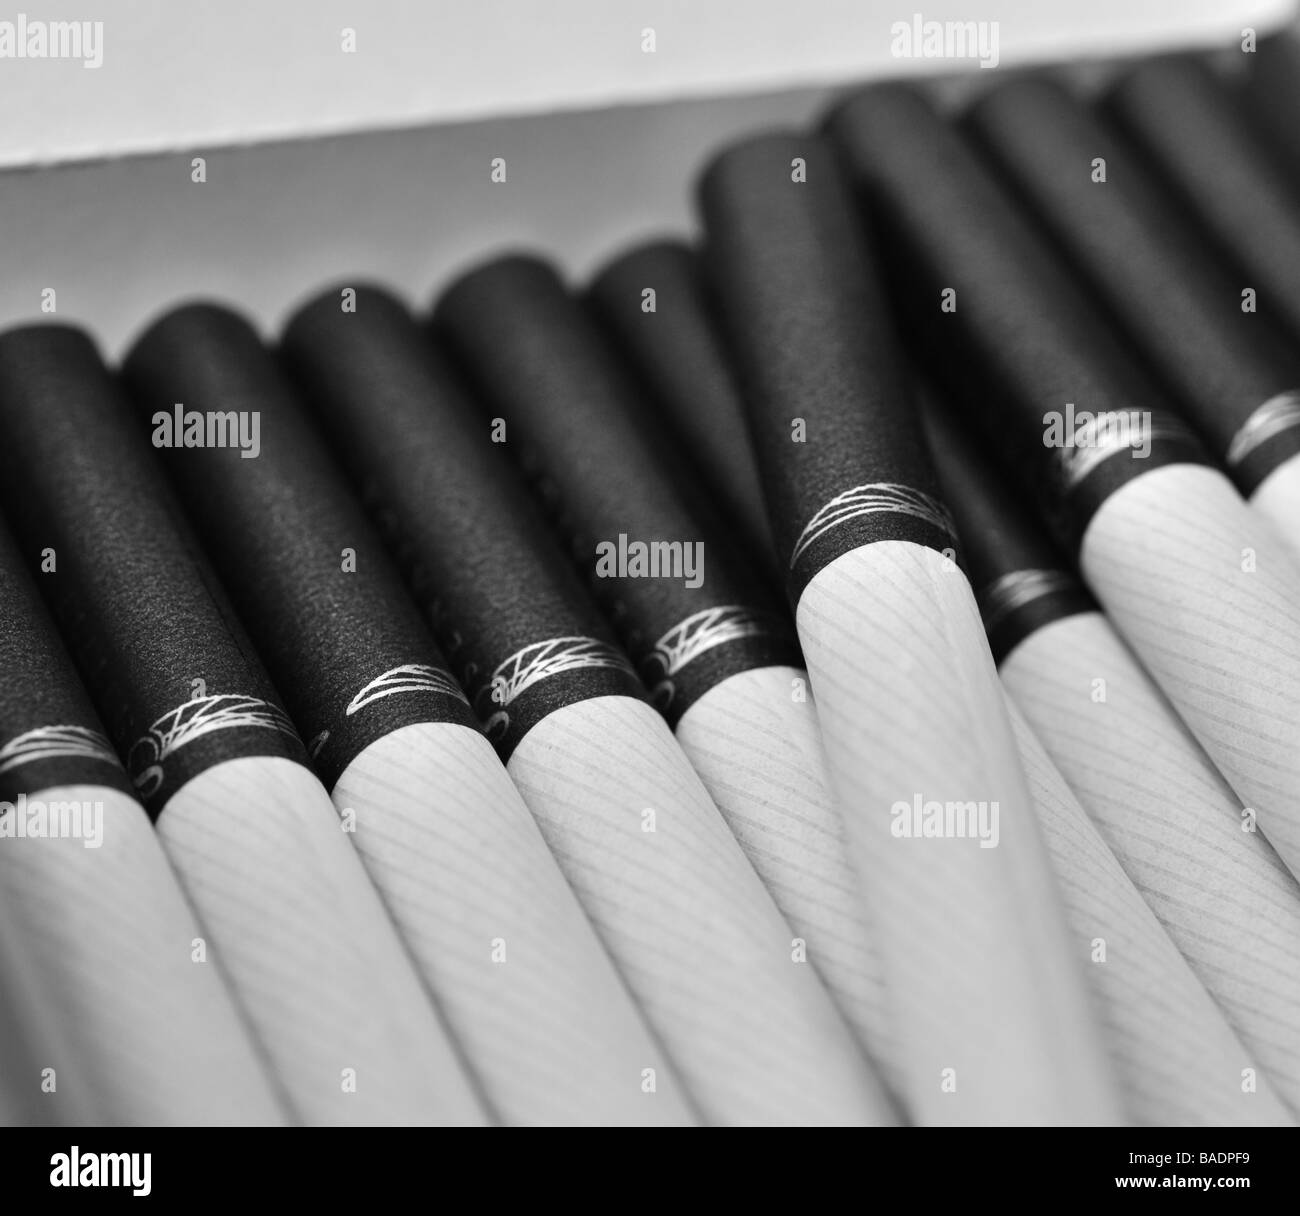 Сигареты с коричневым фильтром. Сигареты с черным фильтром. Сигареты с белым фильтром. Черные сигареты с белым фильтром. Черные сигареты с черным фильтром.